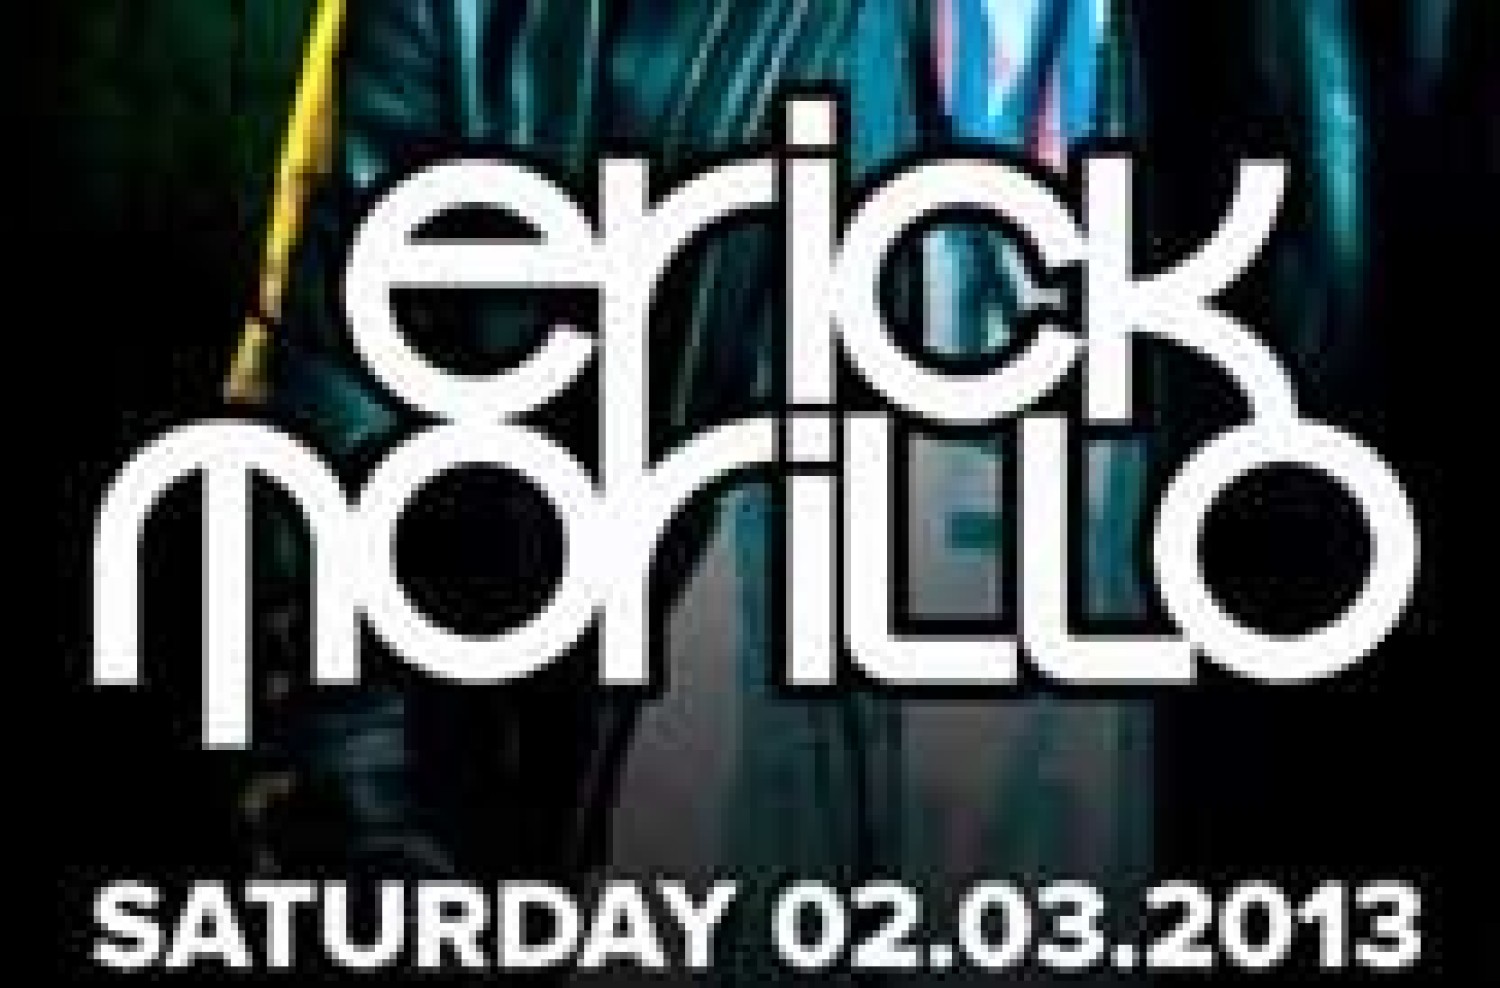 Party nieuws: Erick Morillo in Club Amsterdam op zaterdag 2 maart